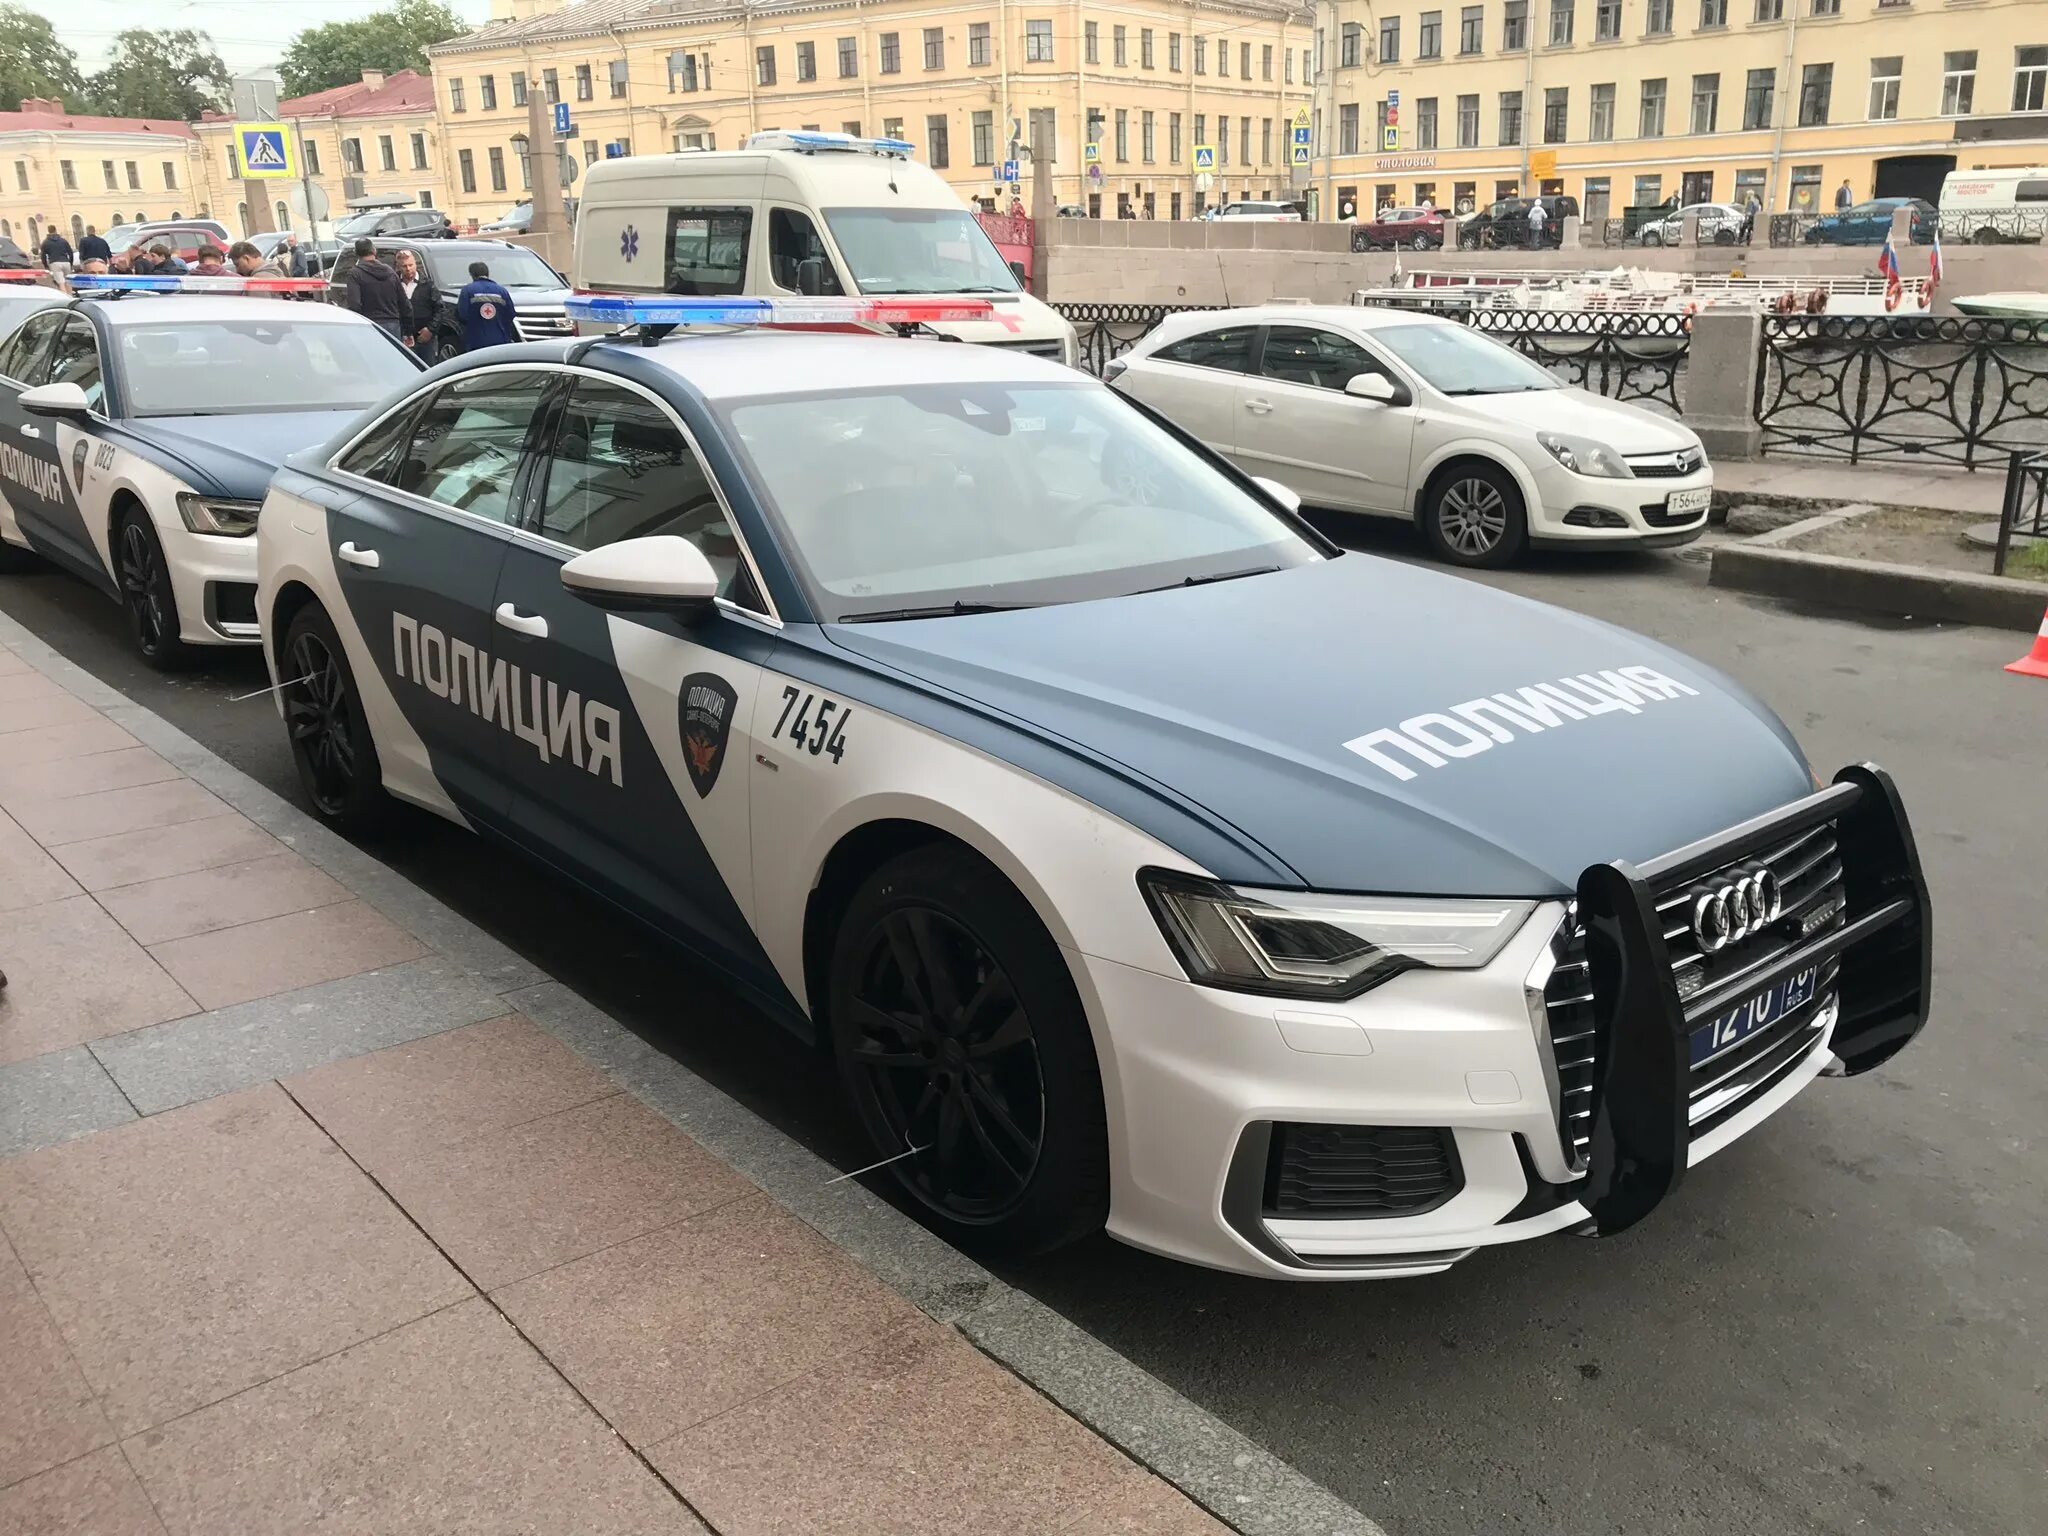 Audi a6 полиция. Полицейская Ауди а6. Audi r8 полиция Санкт-Петербурга. Audi a8 полиция. Дпс питера